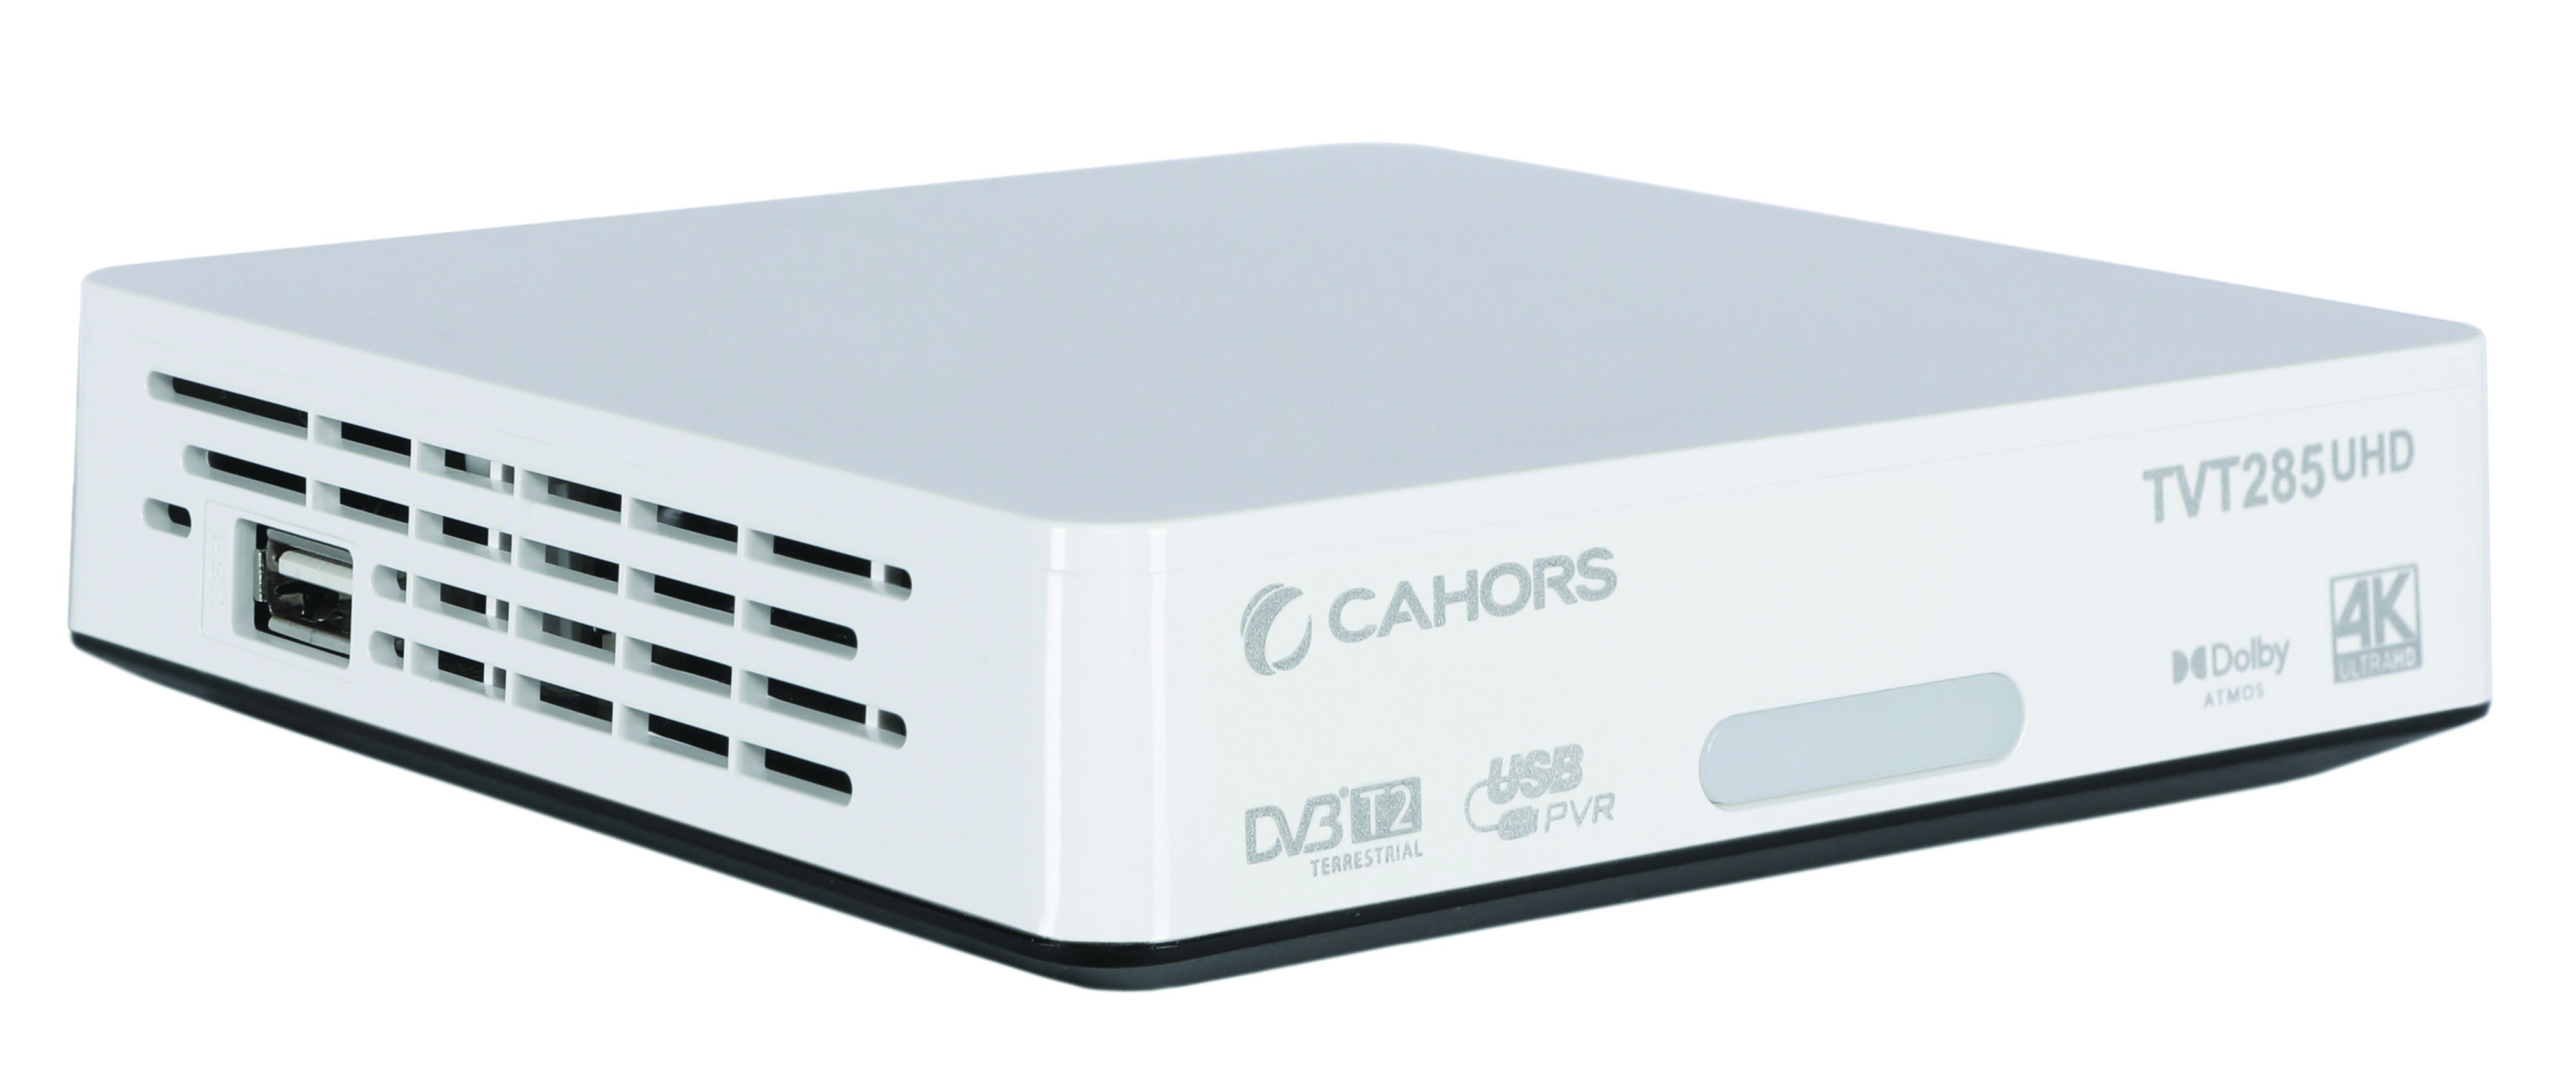 Cahors - Adaptateur TNT 4K UHD, compatible avec les nouveaux standards de diffusion